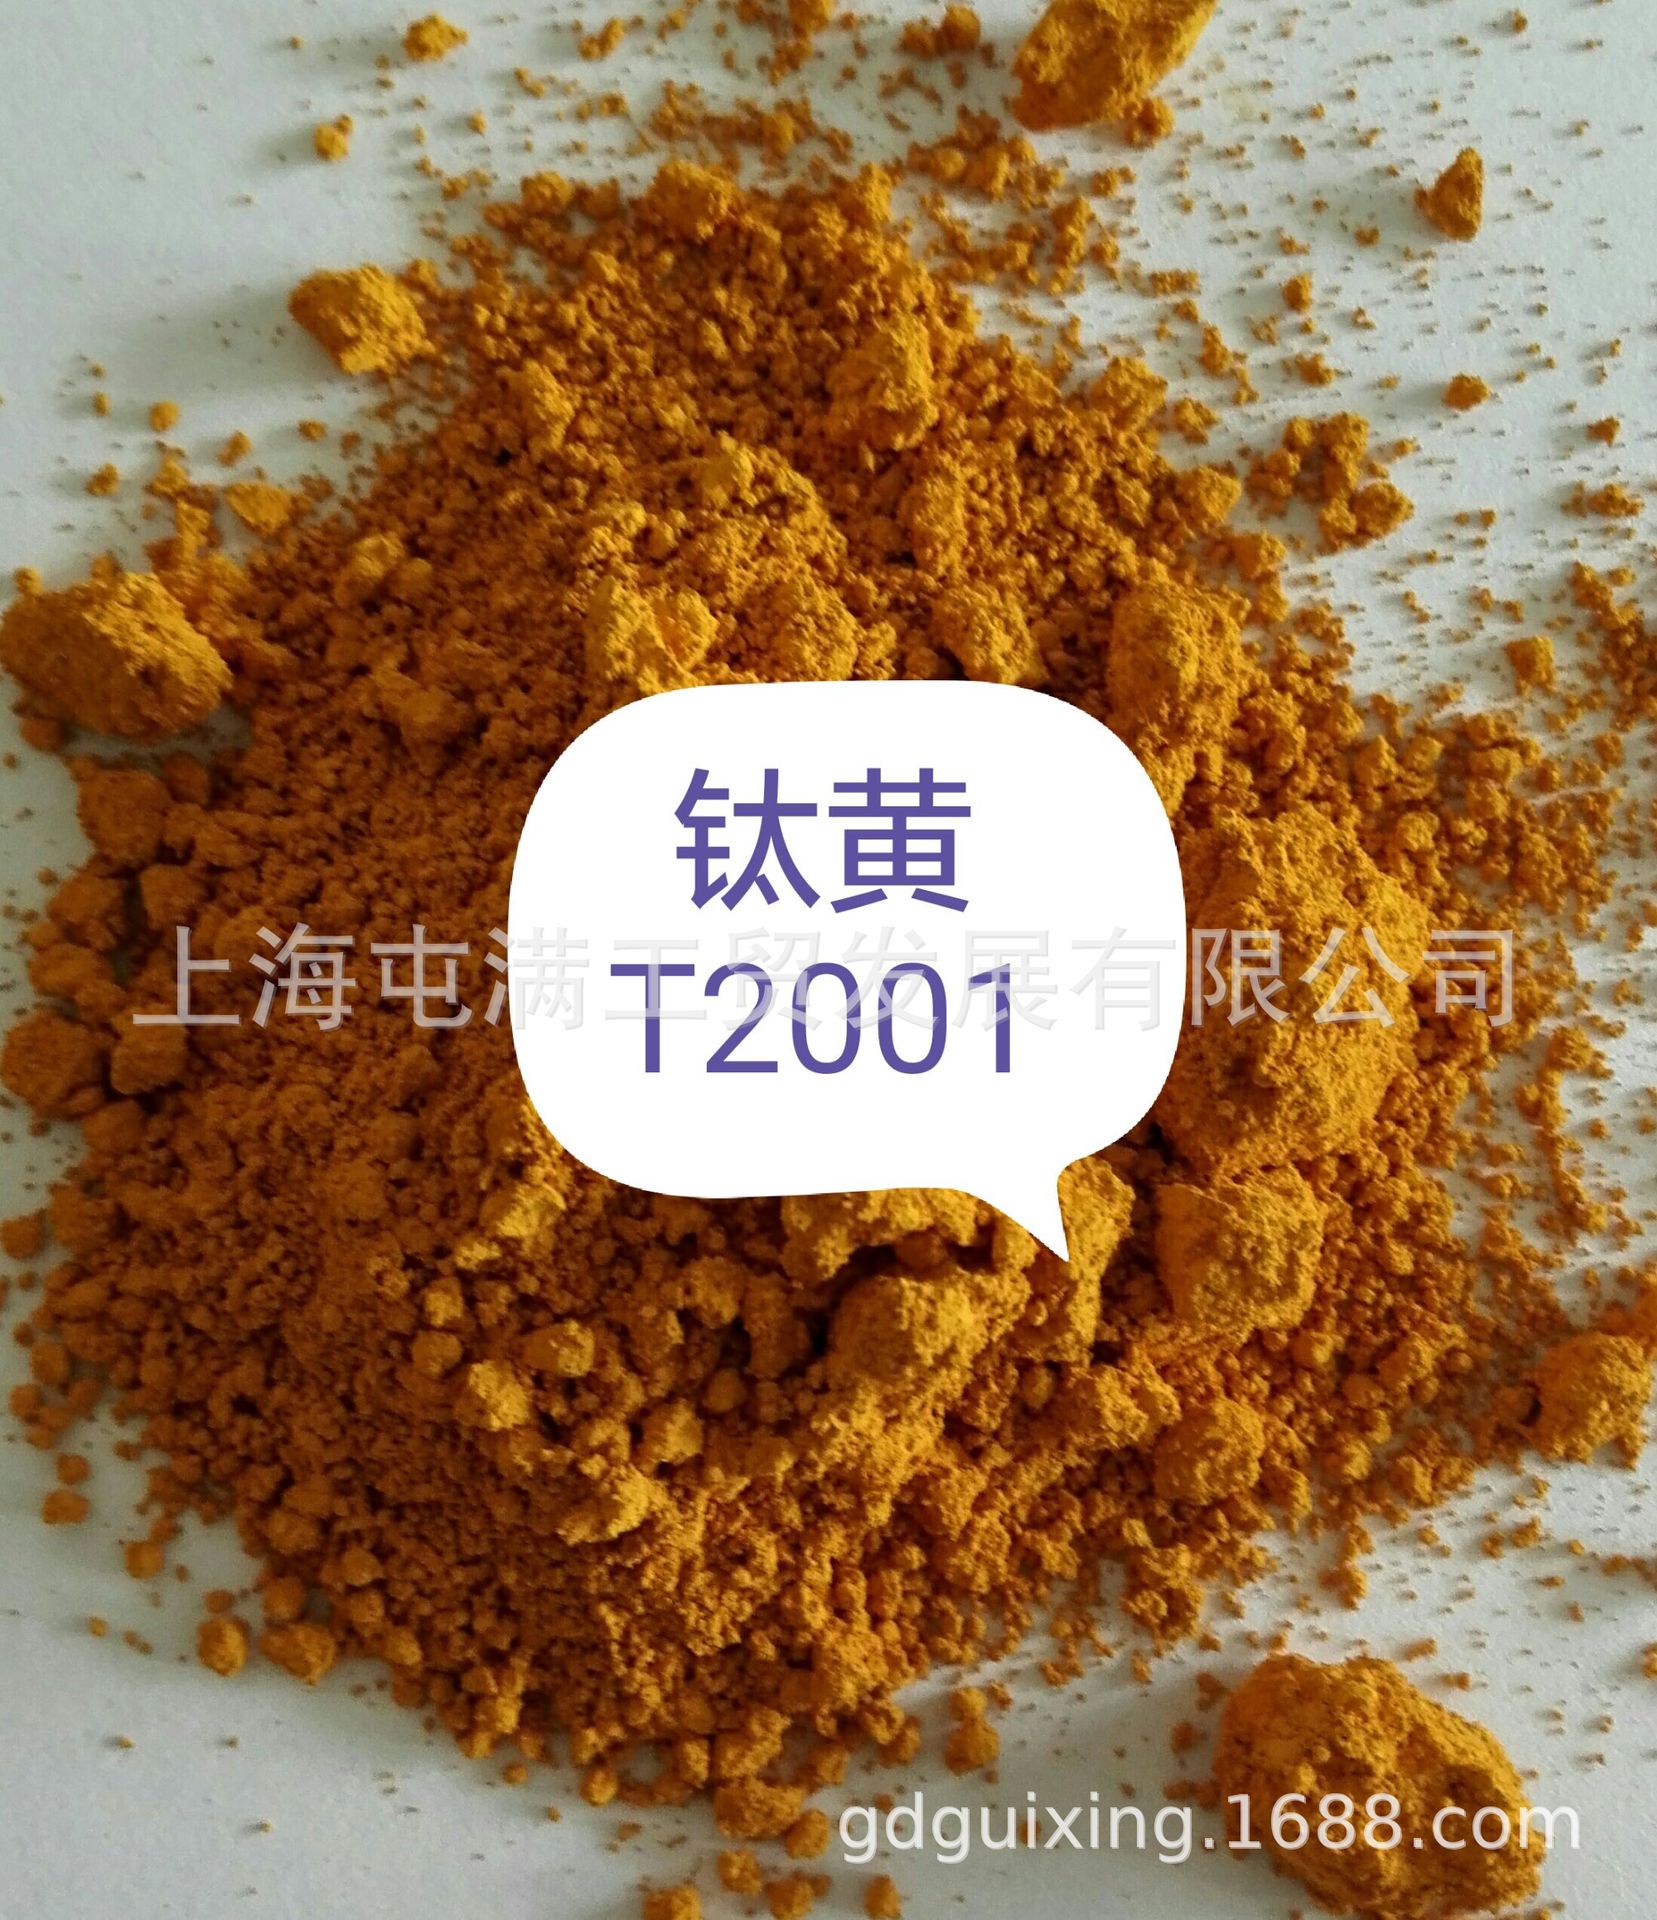 供应进口环保钛黄颜料 T2001(价格优势）|ms